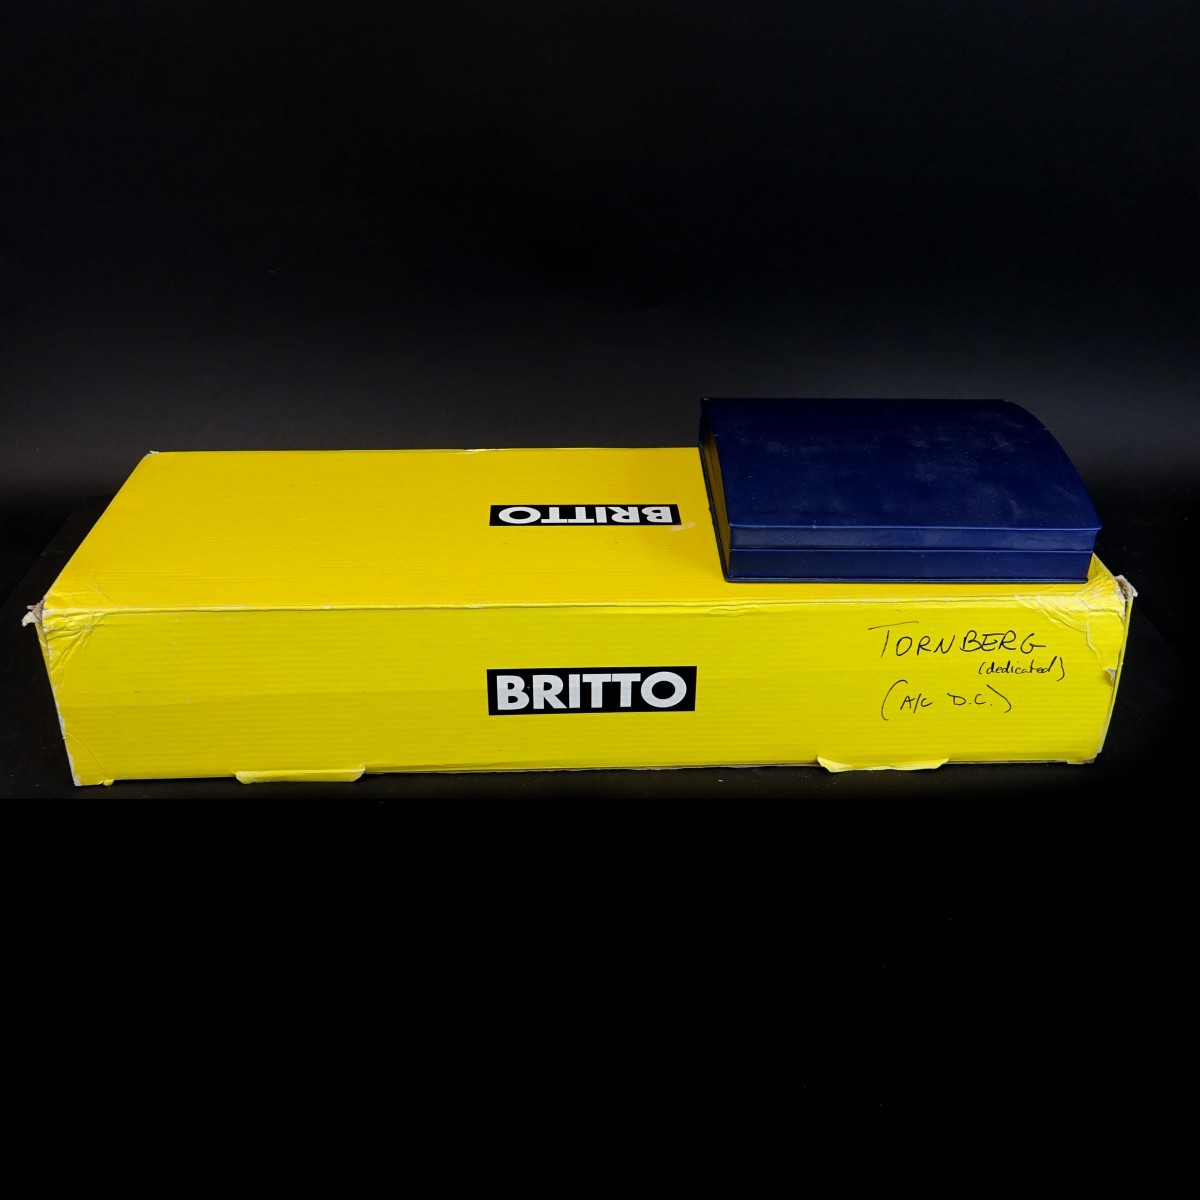 Two (2) Romero Britto Items in Original Boxes